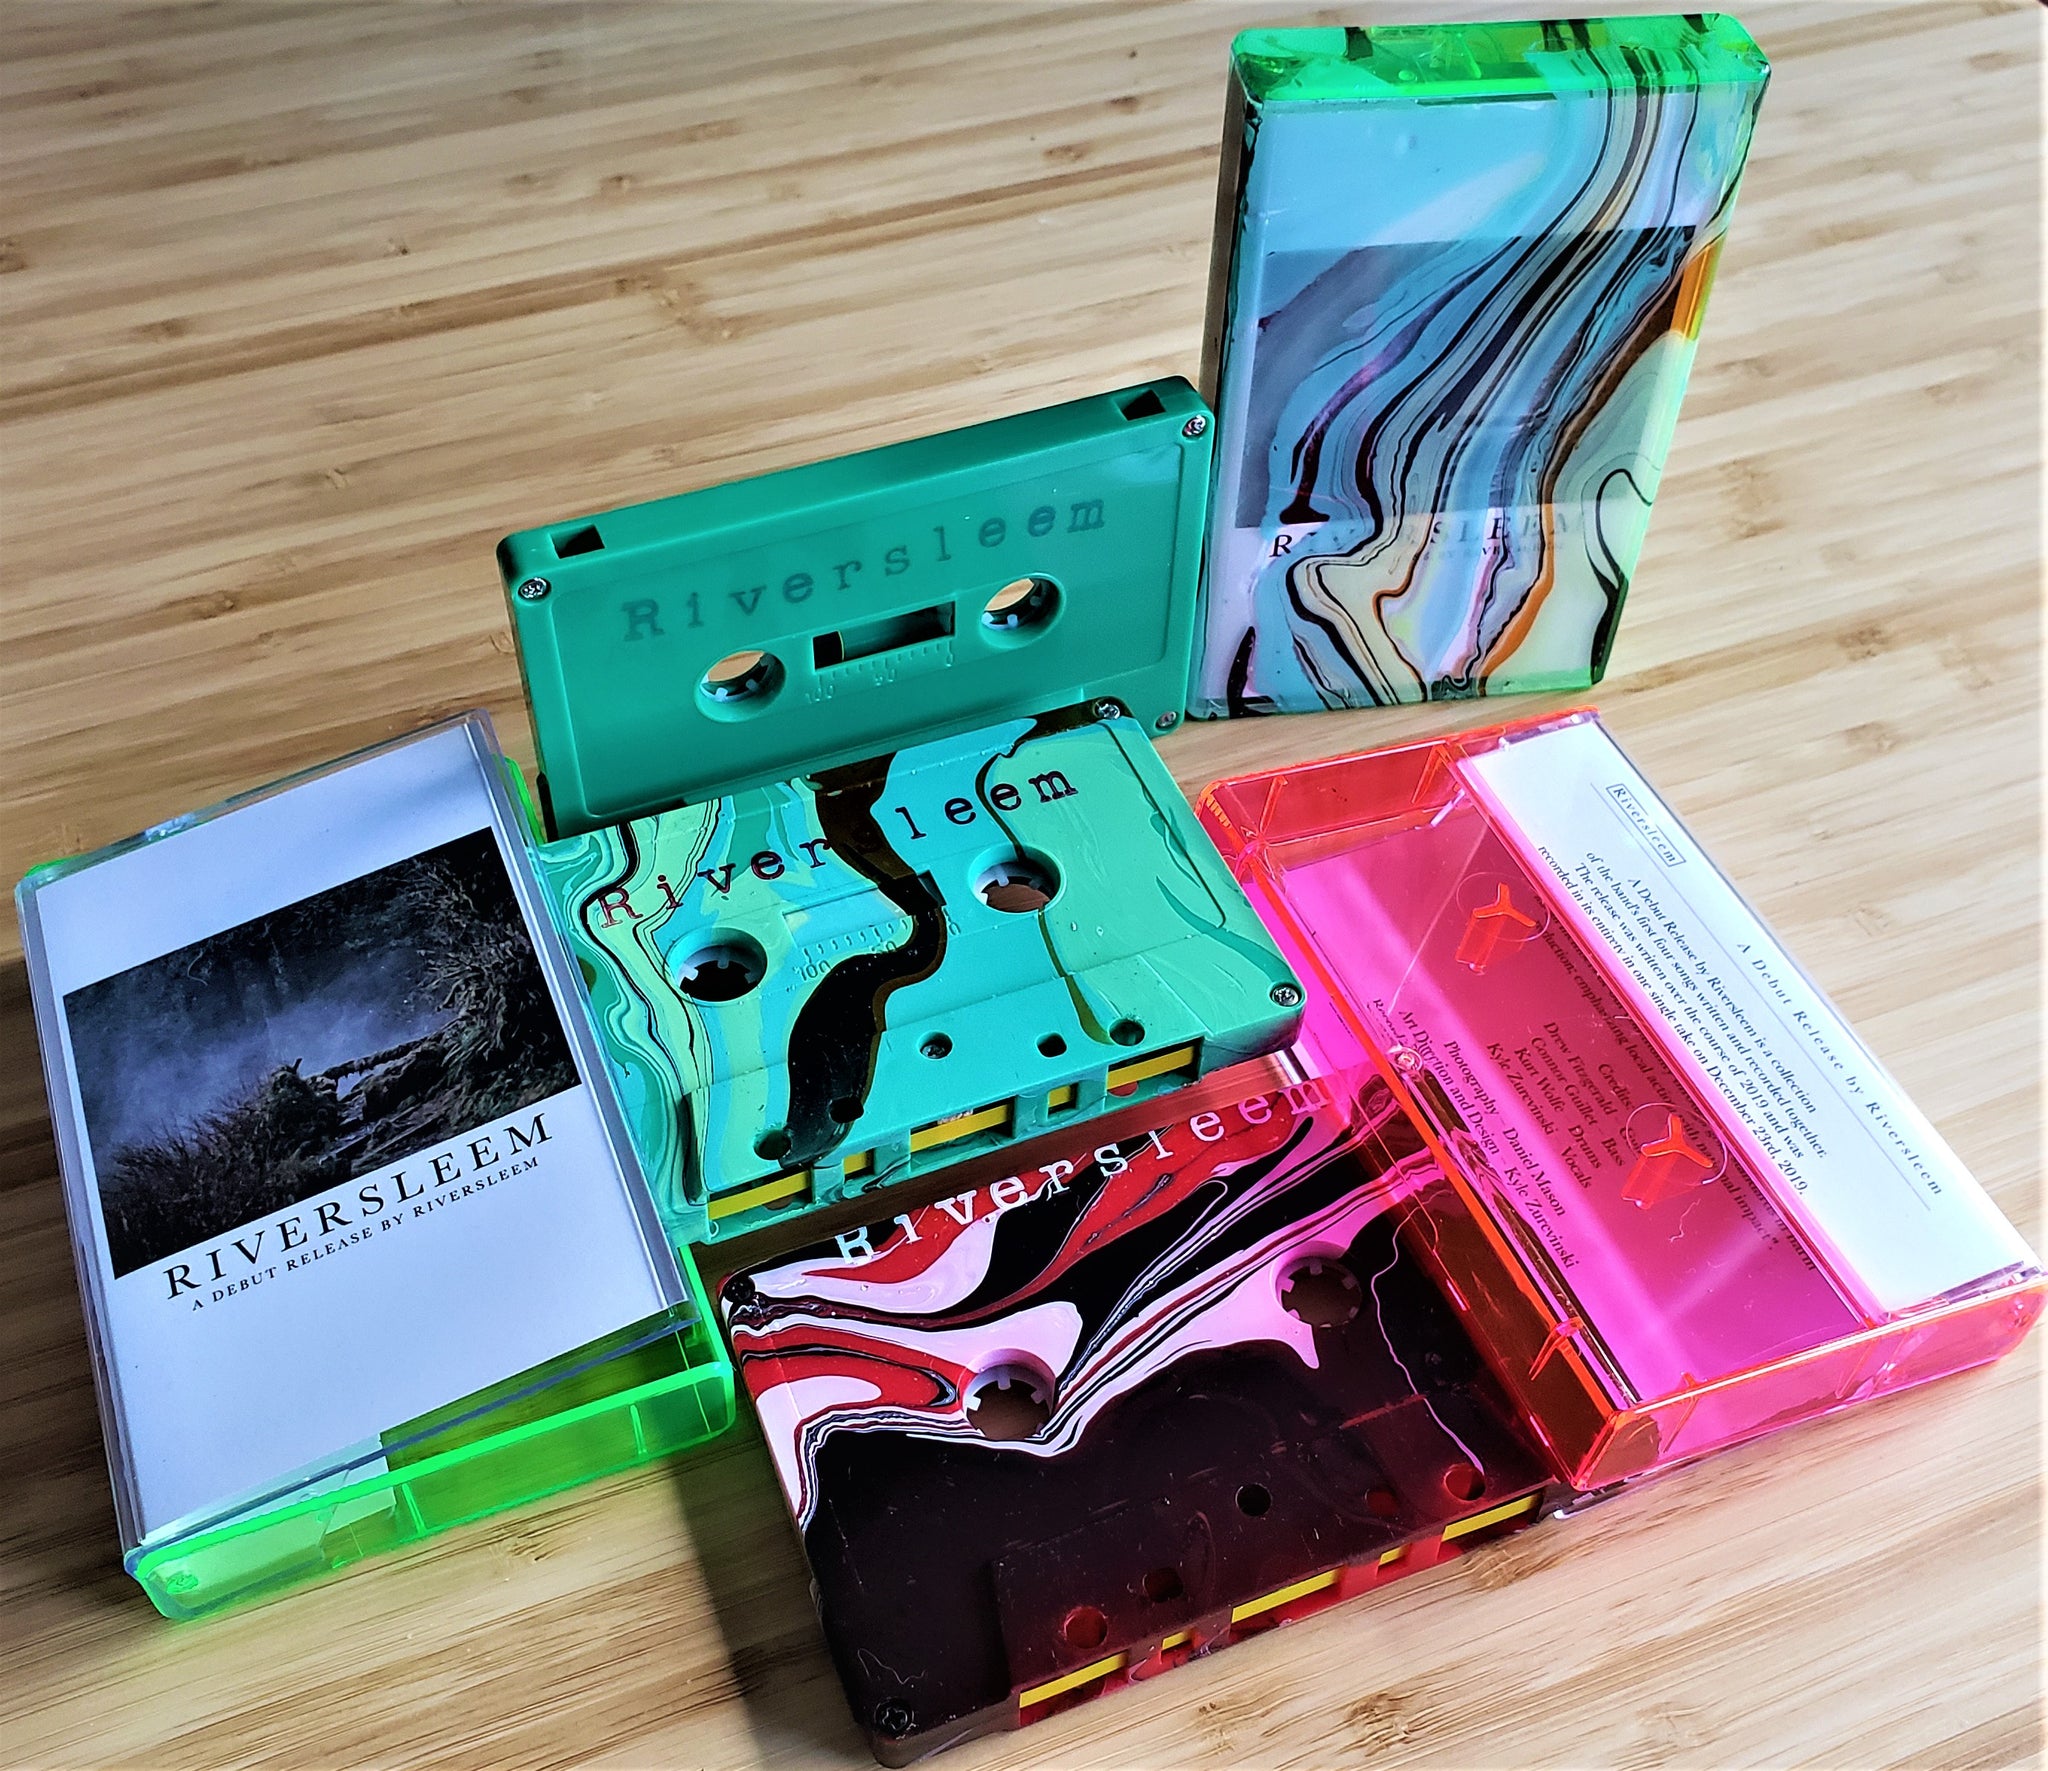 RIVERSLEEM - A Debut Release (cassette)